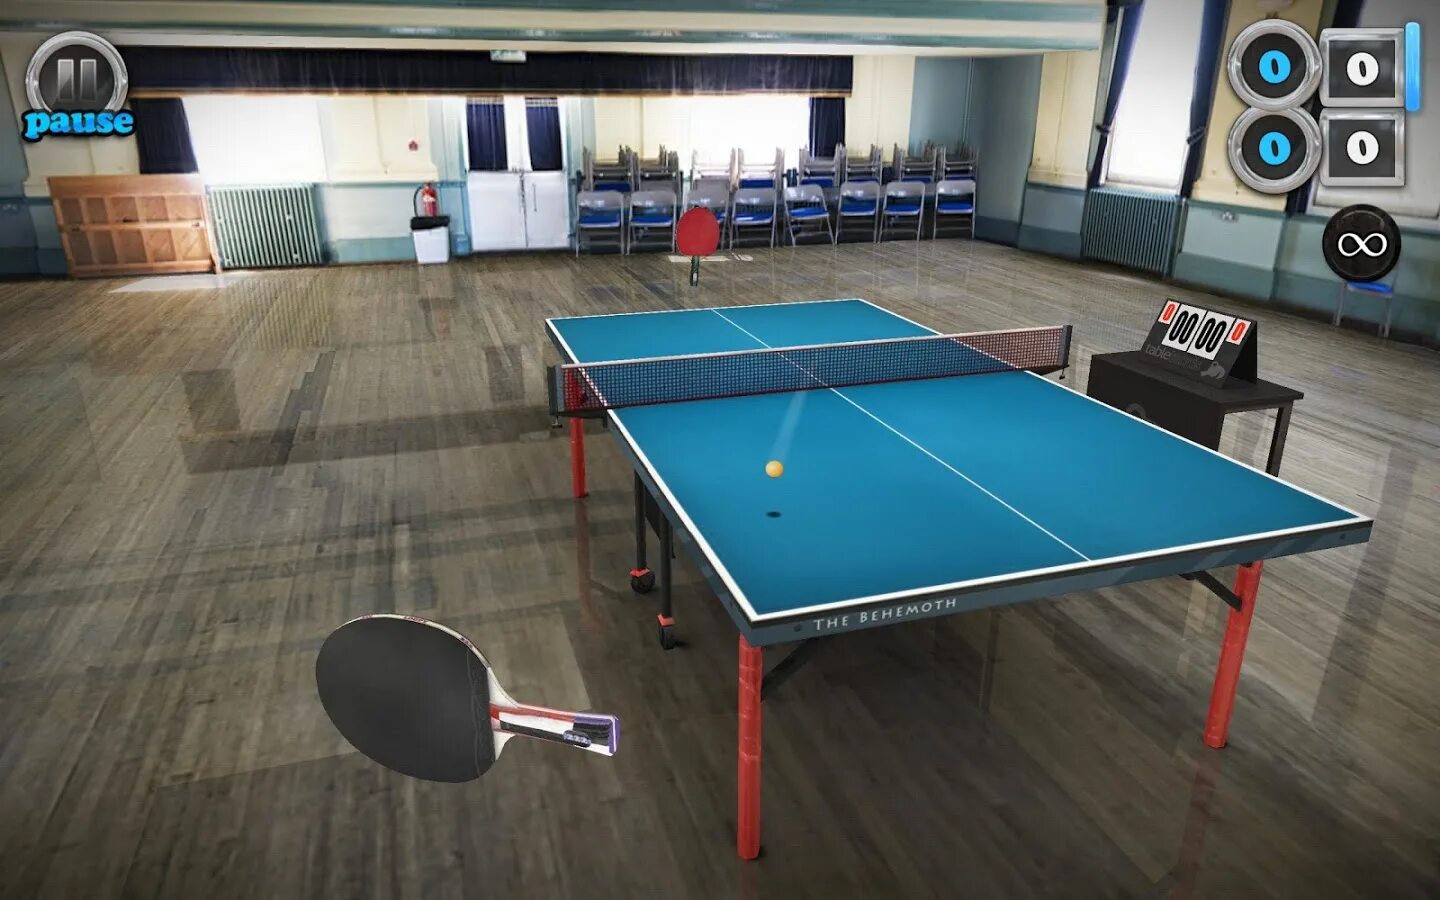 Table Tennis игра. Тейбл теннис. Настольный теннис на андроид. Зал для настольного тенниса вид сверху.